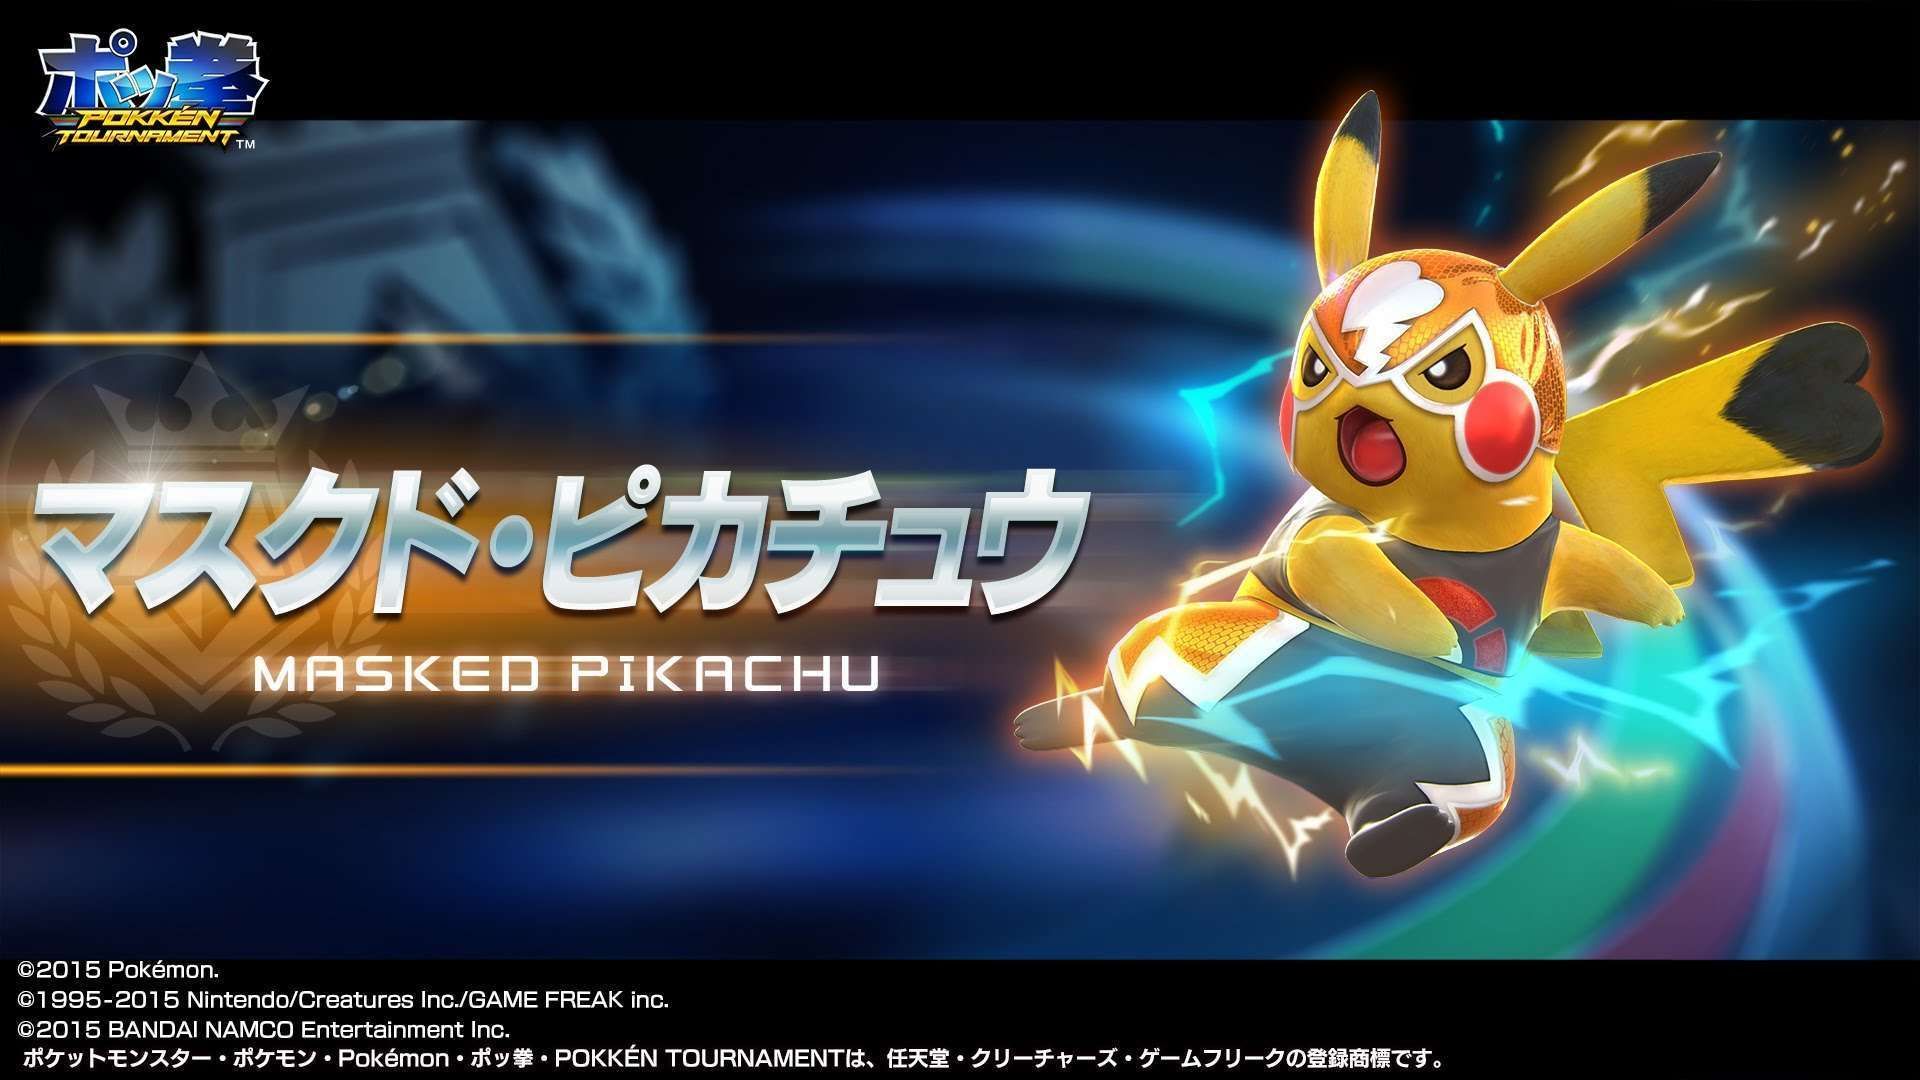 HD Wallpaper Pokemon Masked Pikachu 1080p. Pokkén tournament